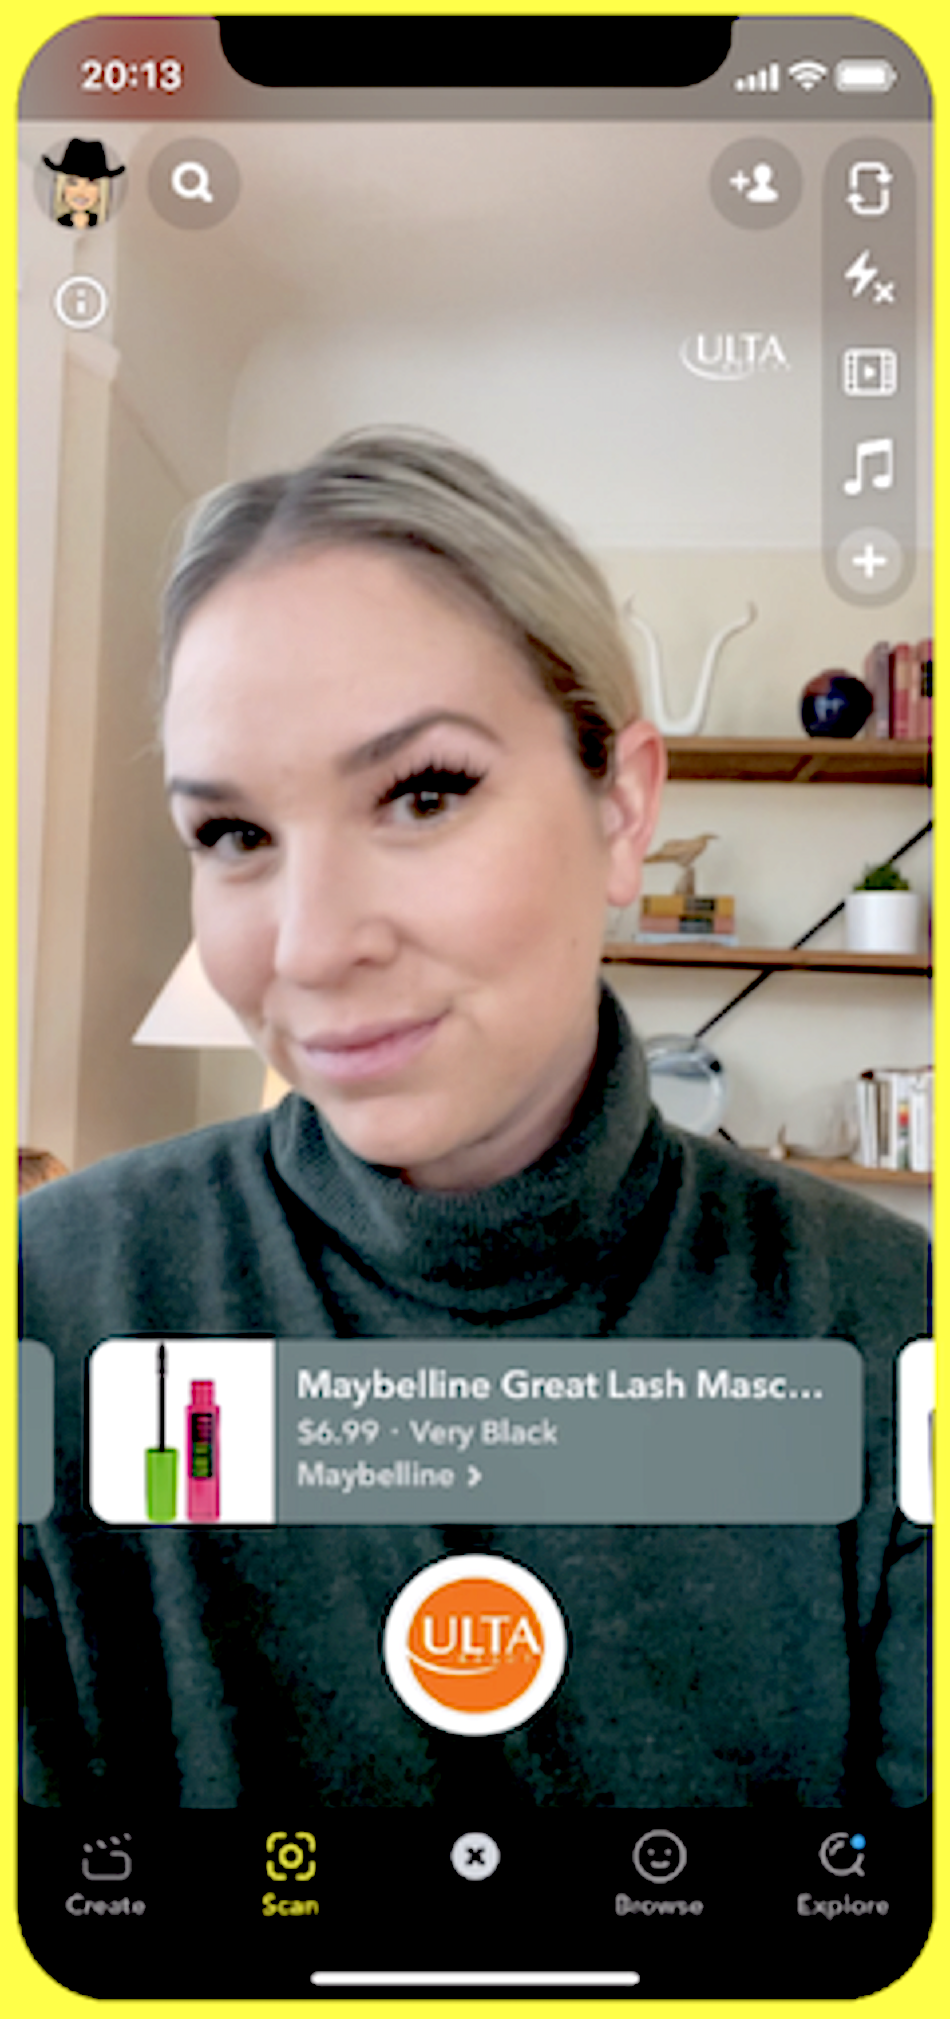 Auf Snapchat zeigt L'Oreal in einem Augmented-Reality-Feature einen User, der Mascara virtuell anprobiert.